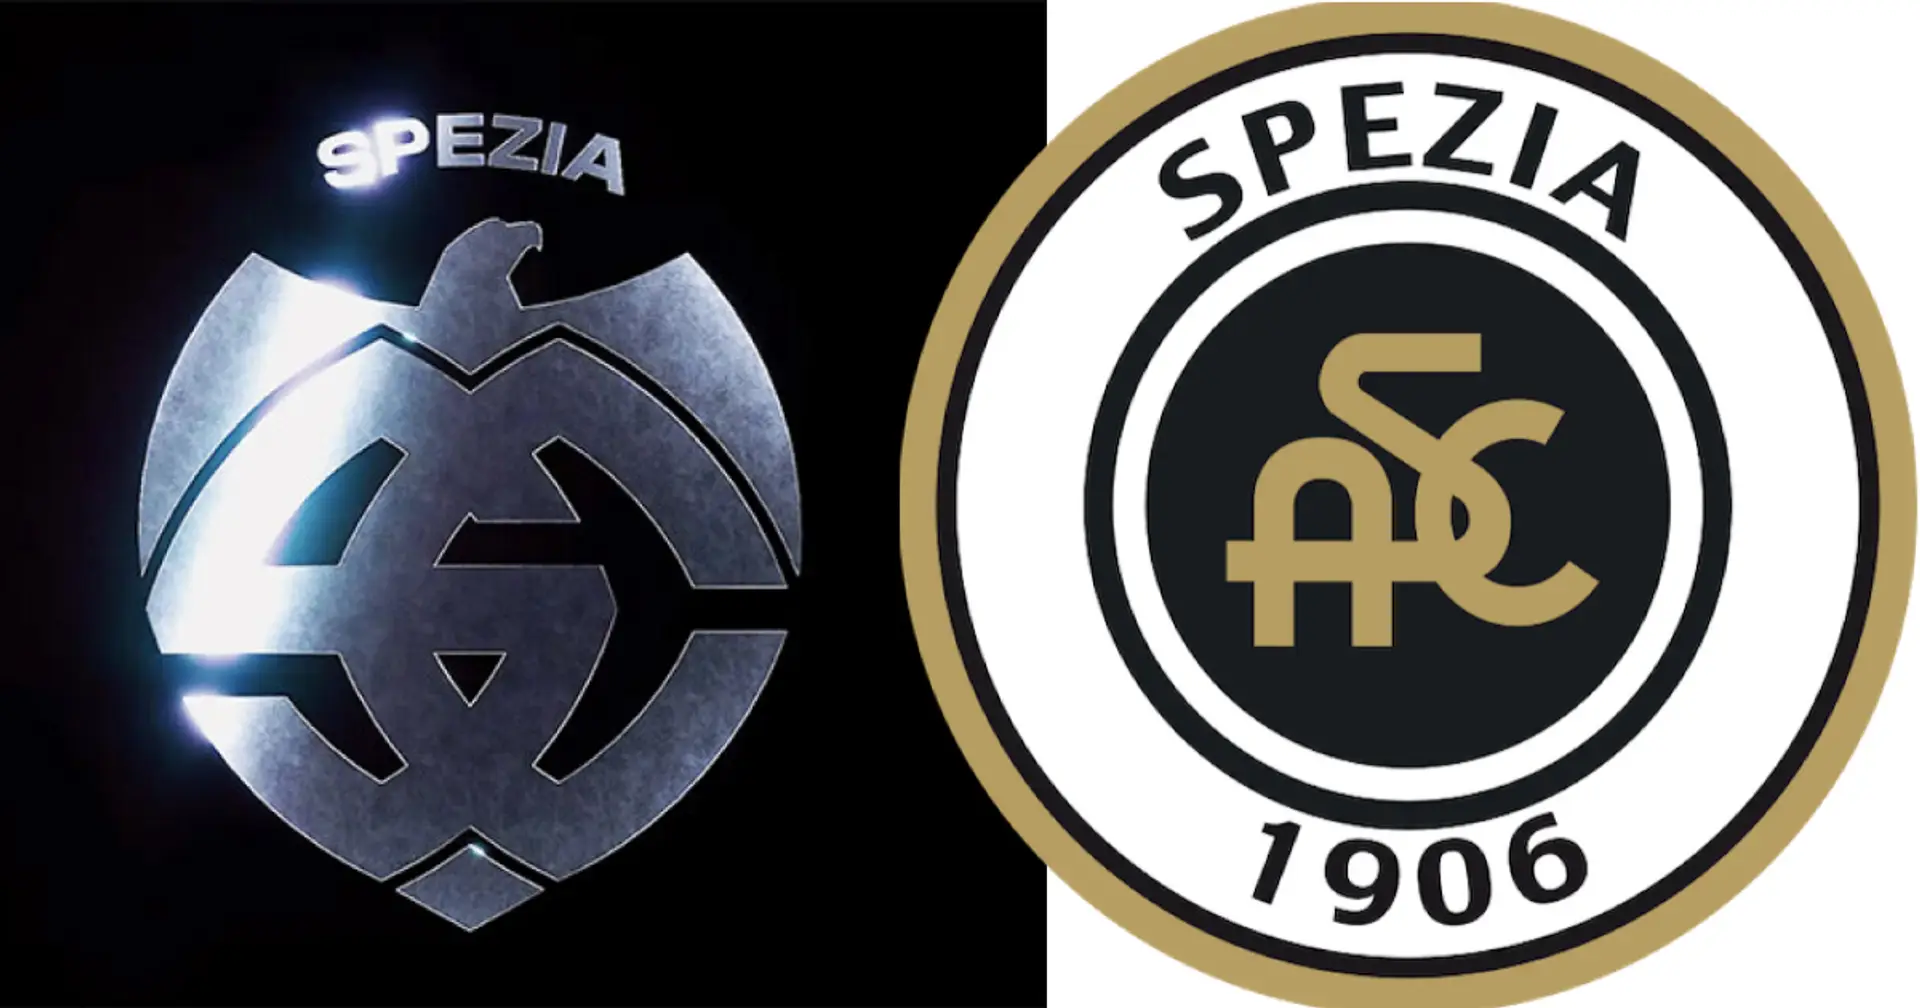 "Sieht aus wie ein Nazi-Symbol": Italien empört sich über neues Spezia-Logo